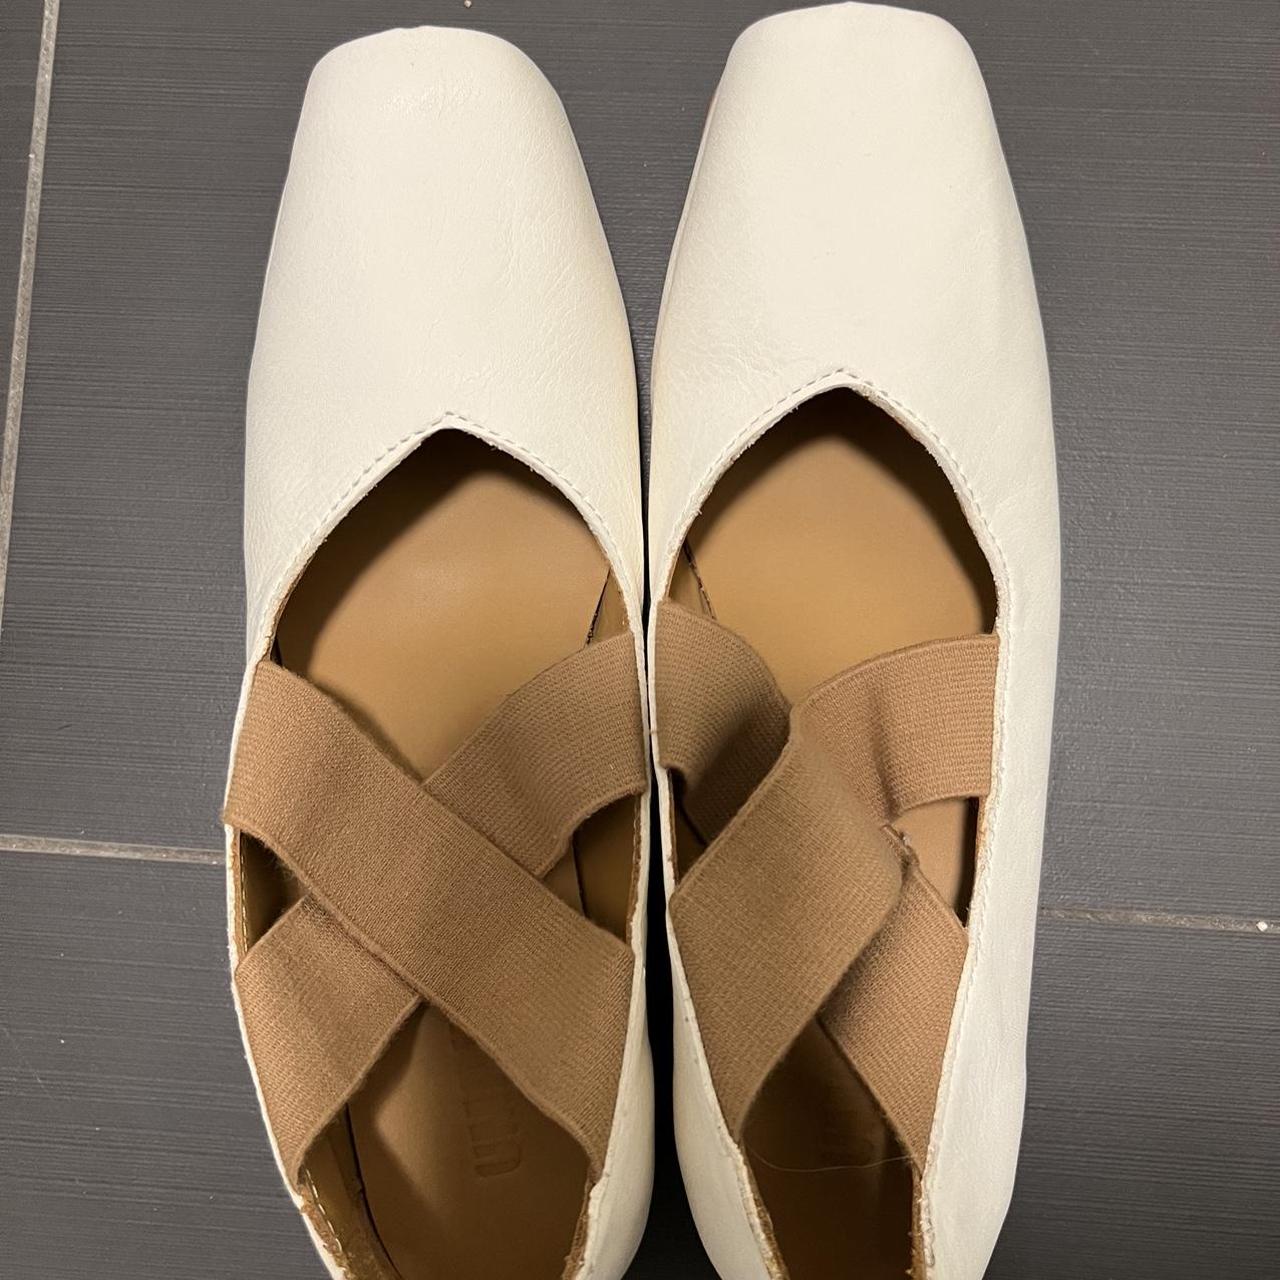 Uma Wang shoes, brand new - Depop